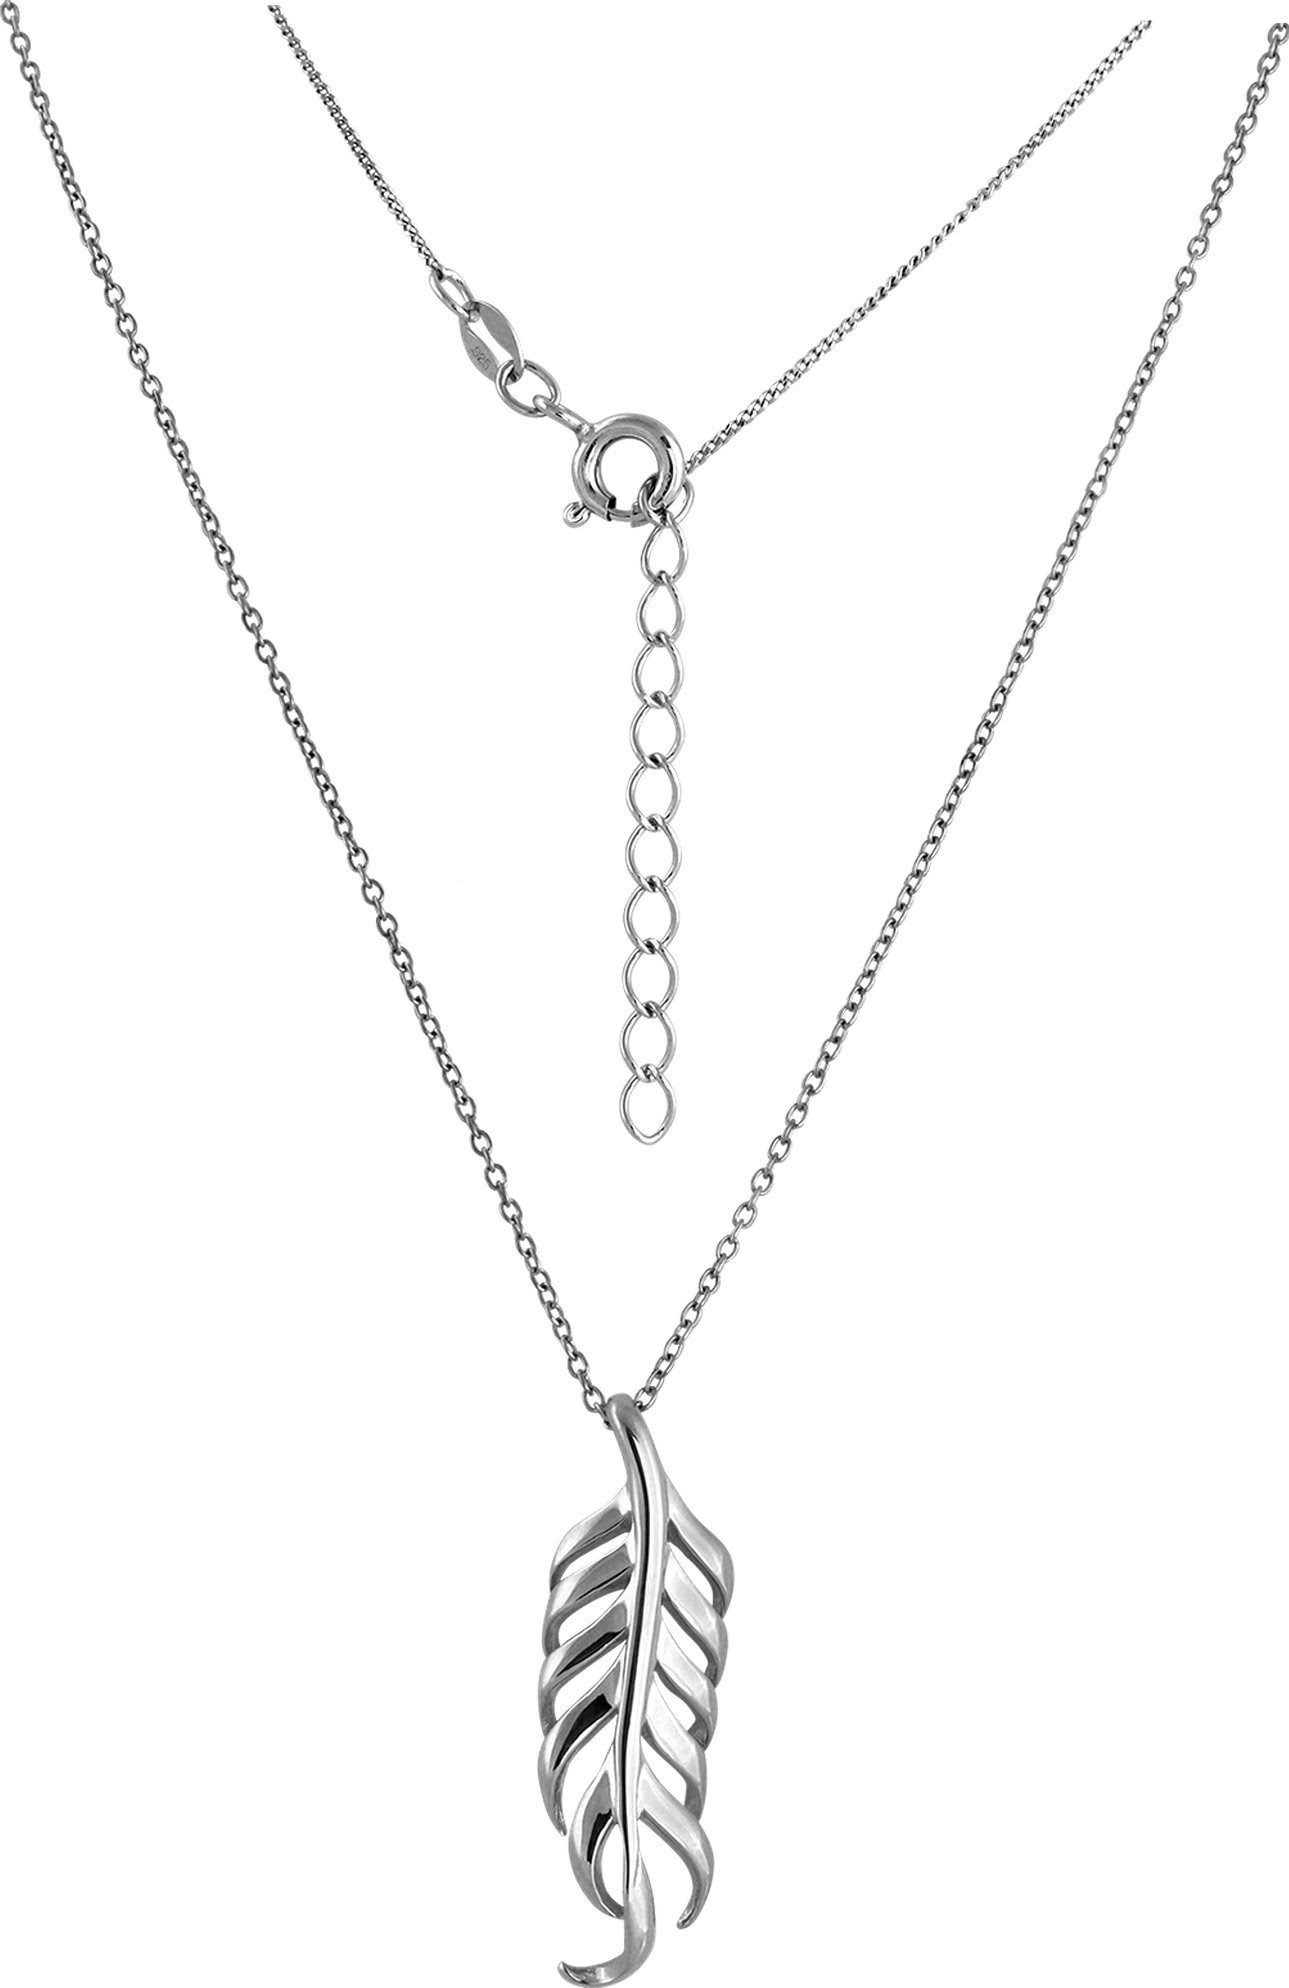 SilberDream Silberkette SilberDream 3cm, Farbe: ca. 44cm silber (Feder) Halskette + Sterling Silber, Silber, 925 Feder Halsketten 925